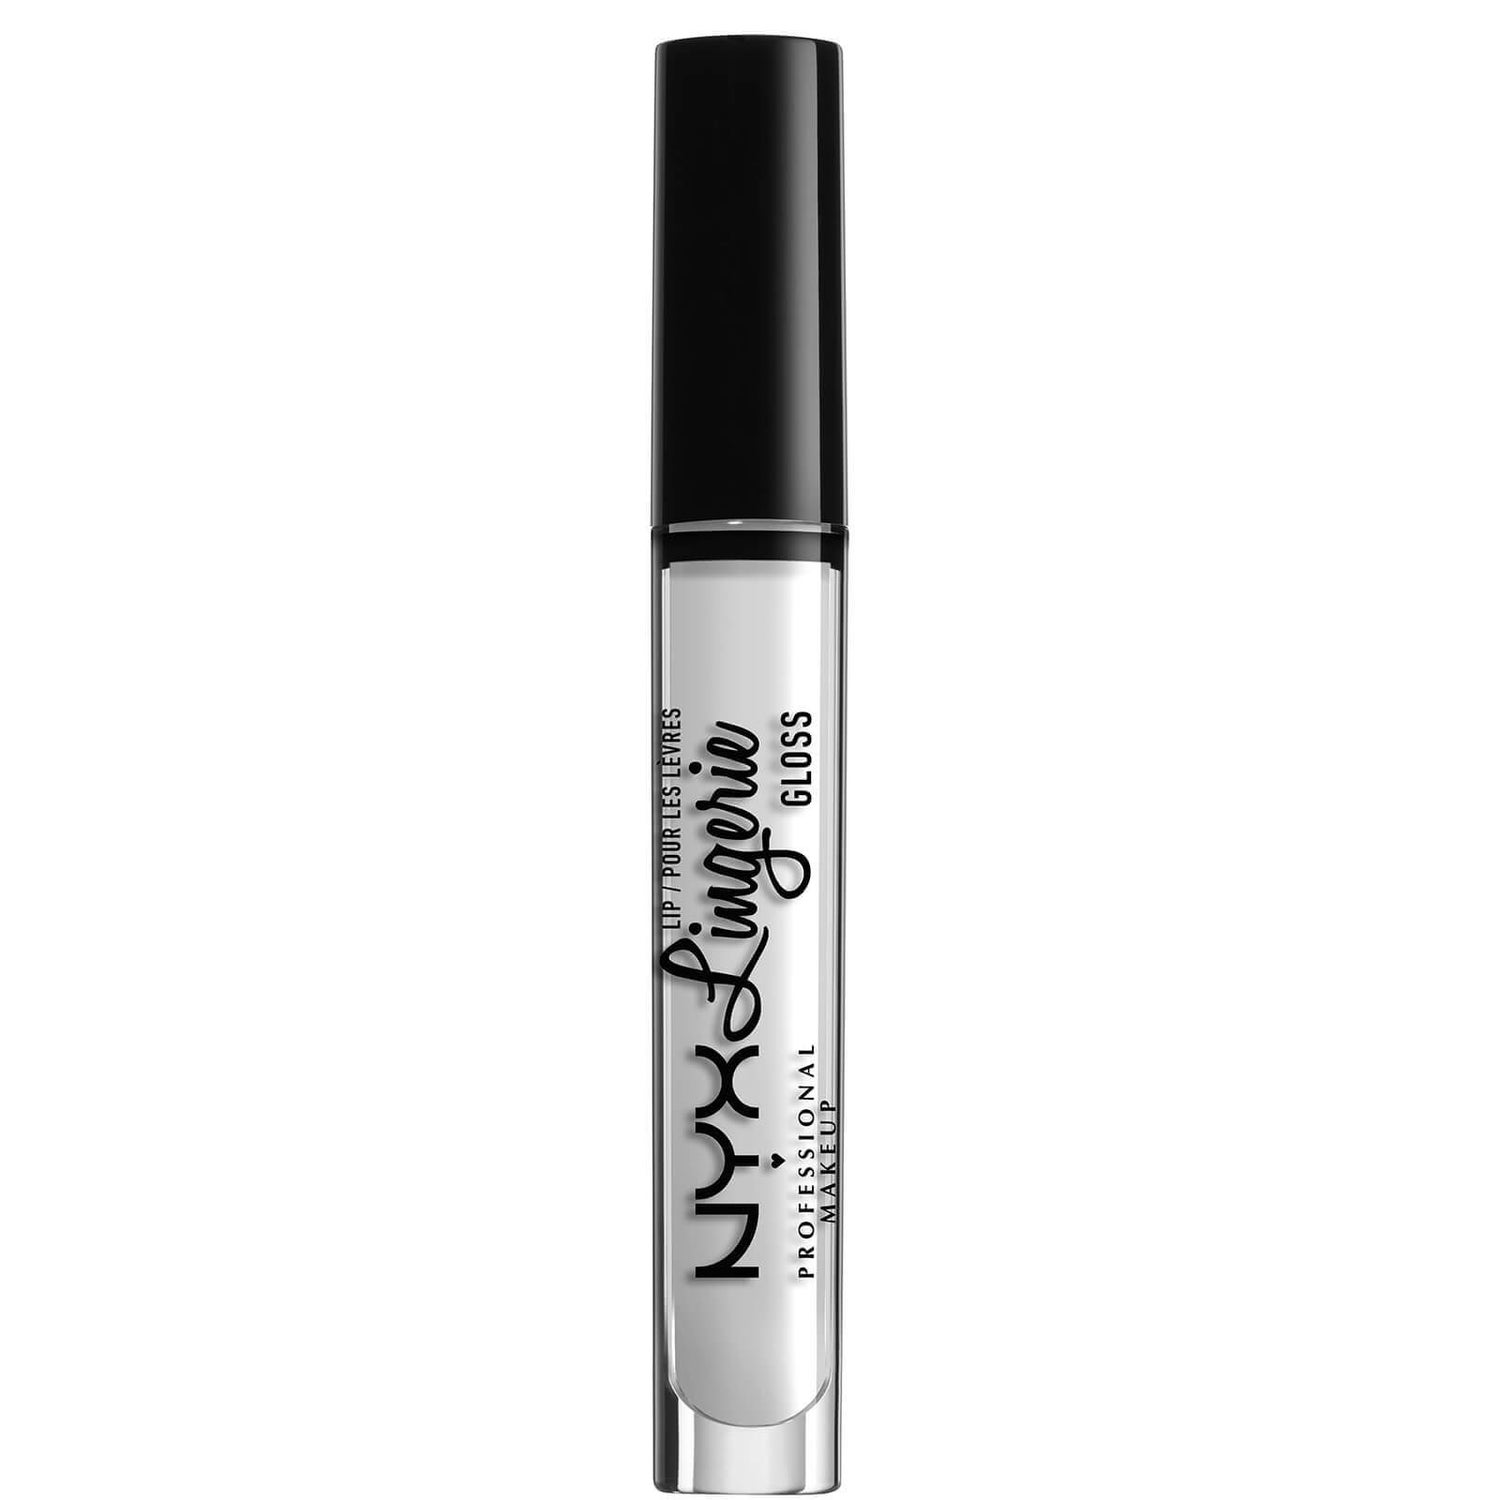 Gloss Lip Lingerie da NYX Professional Makeup 3,4 ml (Vários tons)